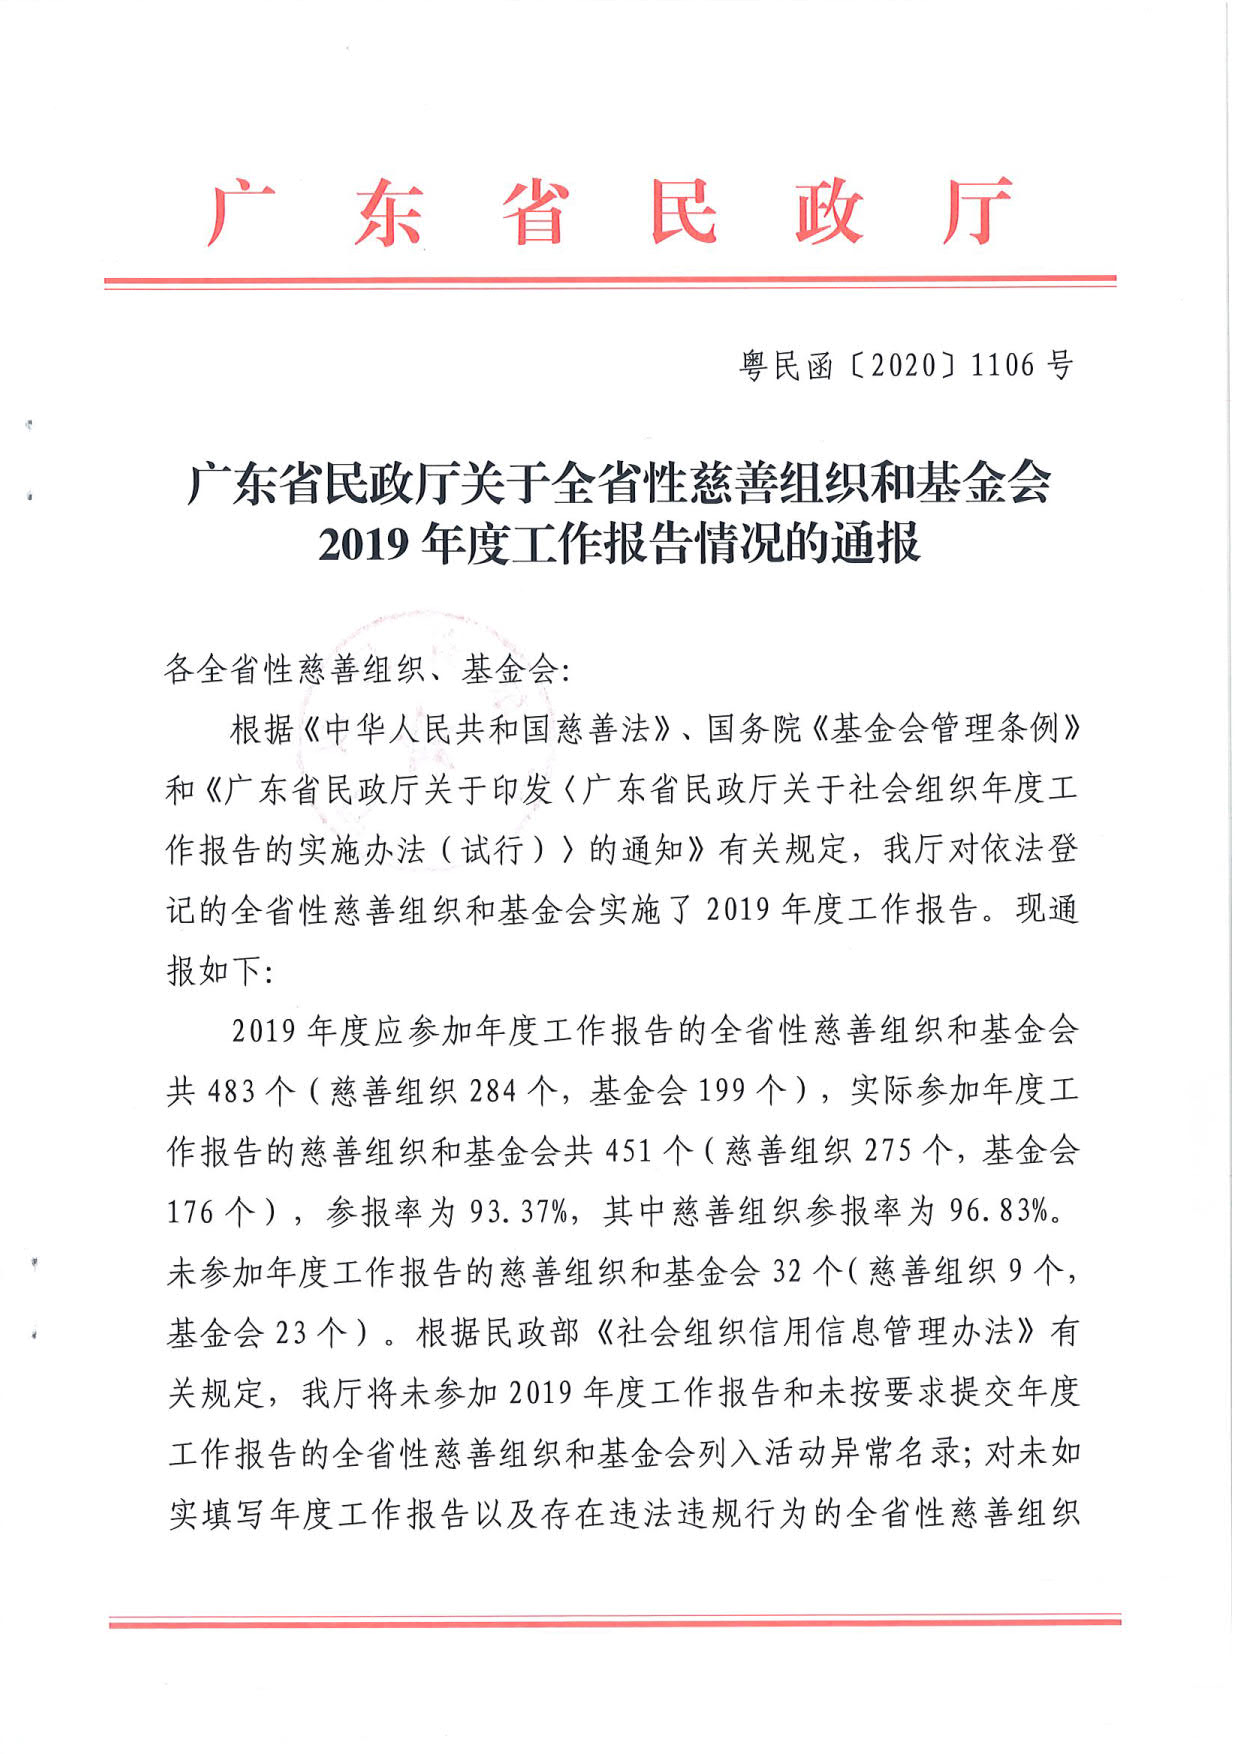 广东省民政厅关于全省性慈善组织和基金会2019年度工作报告情况的通报_1.jpg